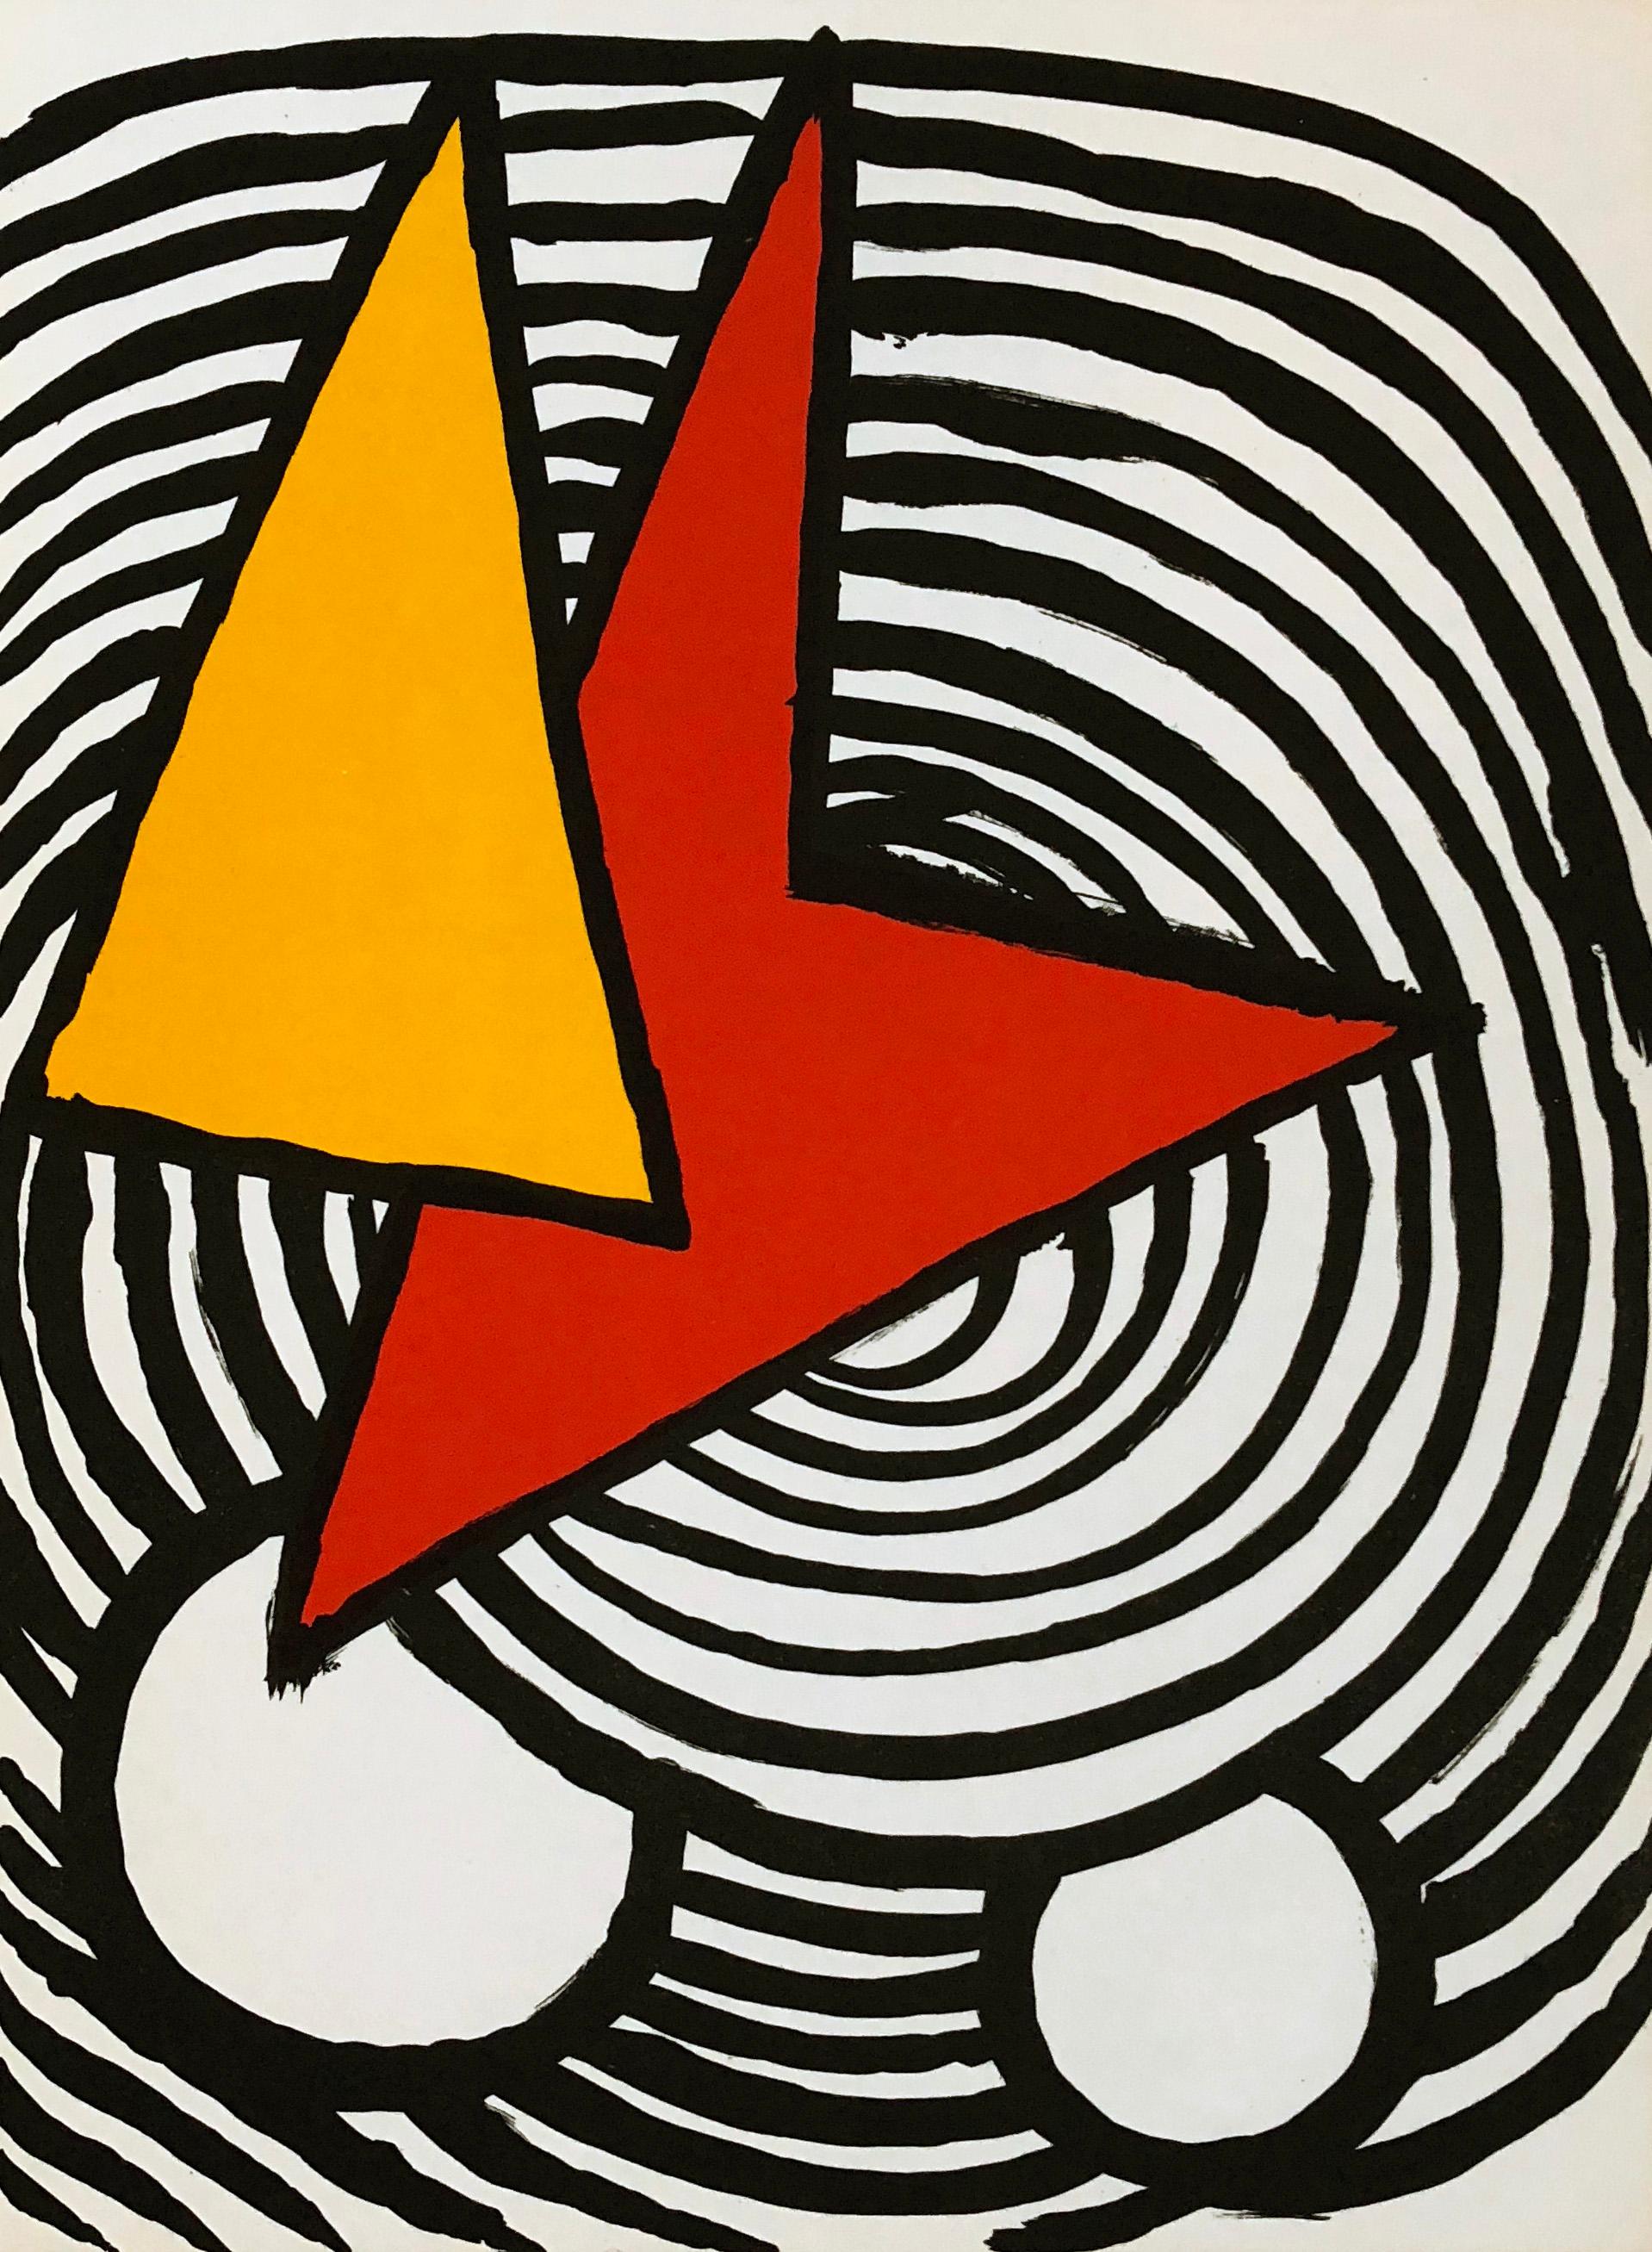 Alexander Calder Lithographie ca. 1973 aus Derrière le miroir:

Farblithographie; 15 x 11 Zoll.
Sehr guter Gesamtzustand; gut präpariert. 
Unsigniert aus einer Auflage von unbekannt.
Von: Derrière le miroir Gedruckt in Frankreich ca. 1967.